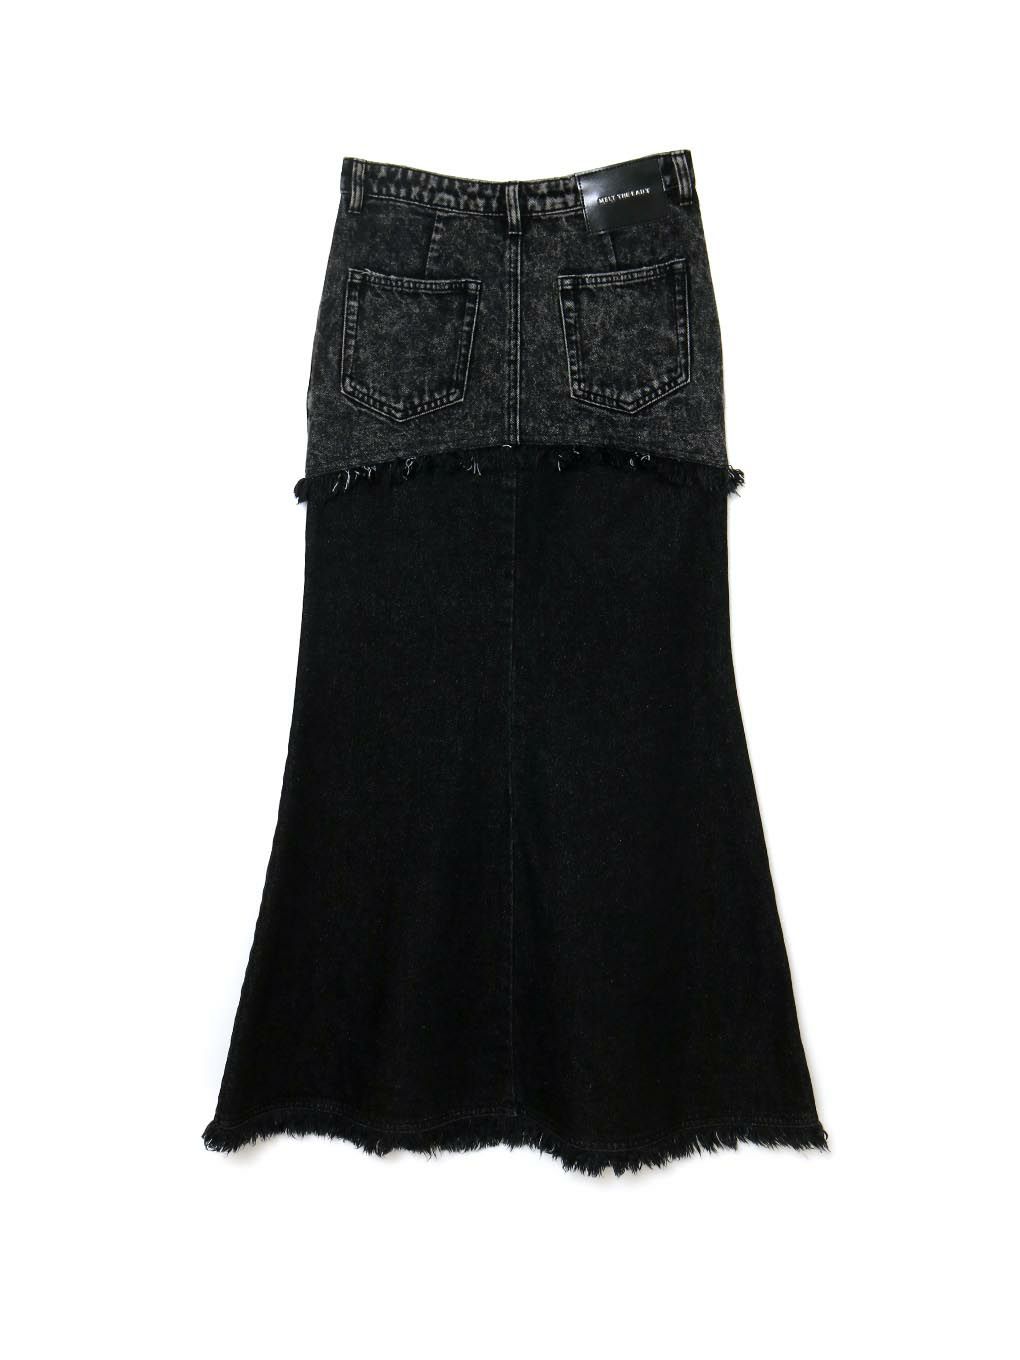 激安の注文 melt the lady switched denim skirt Black | modern-line.hr